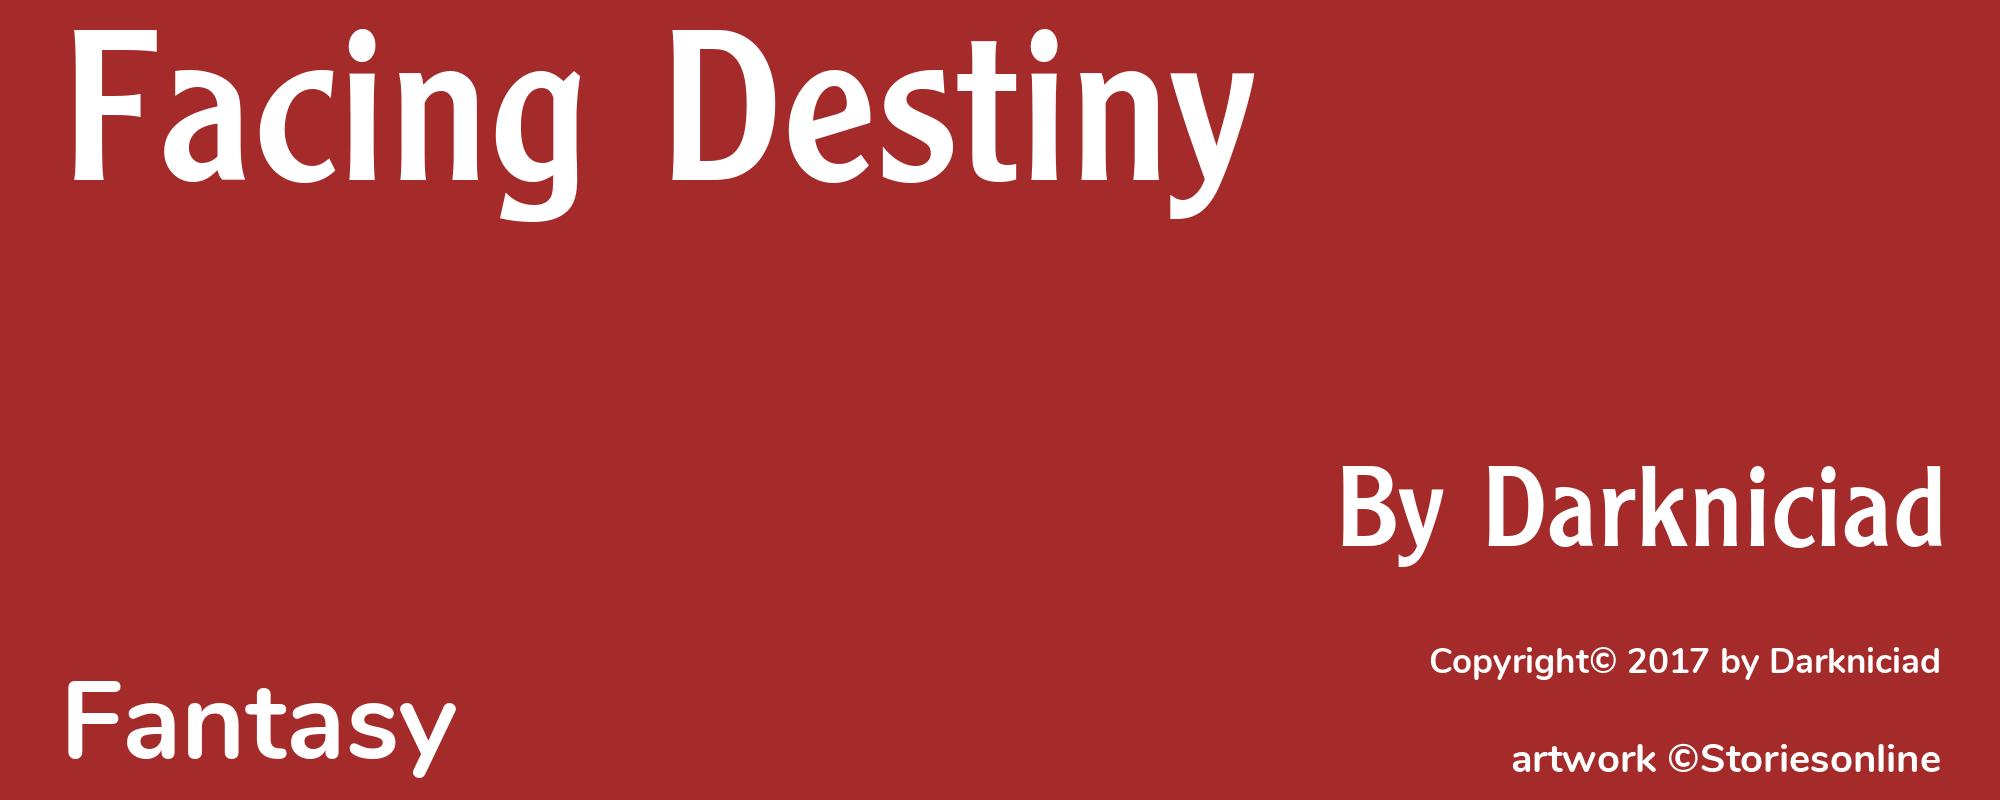 Facing Destiny - Cover